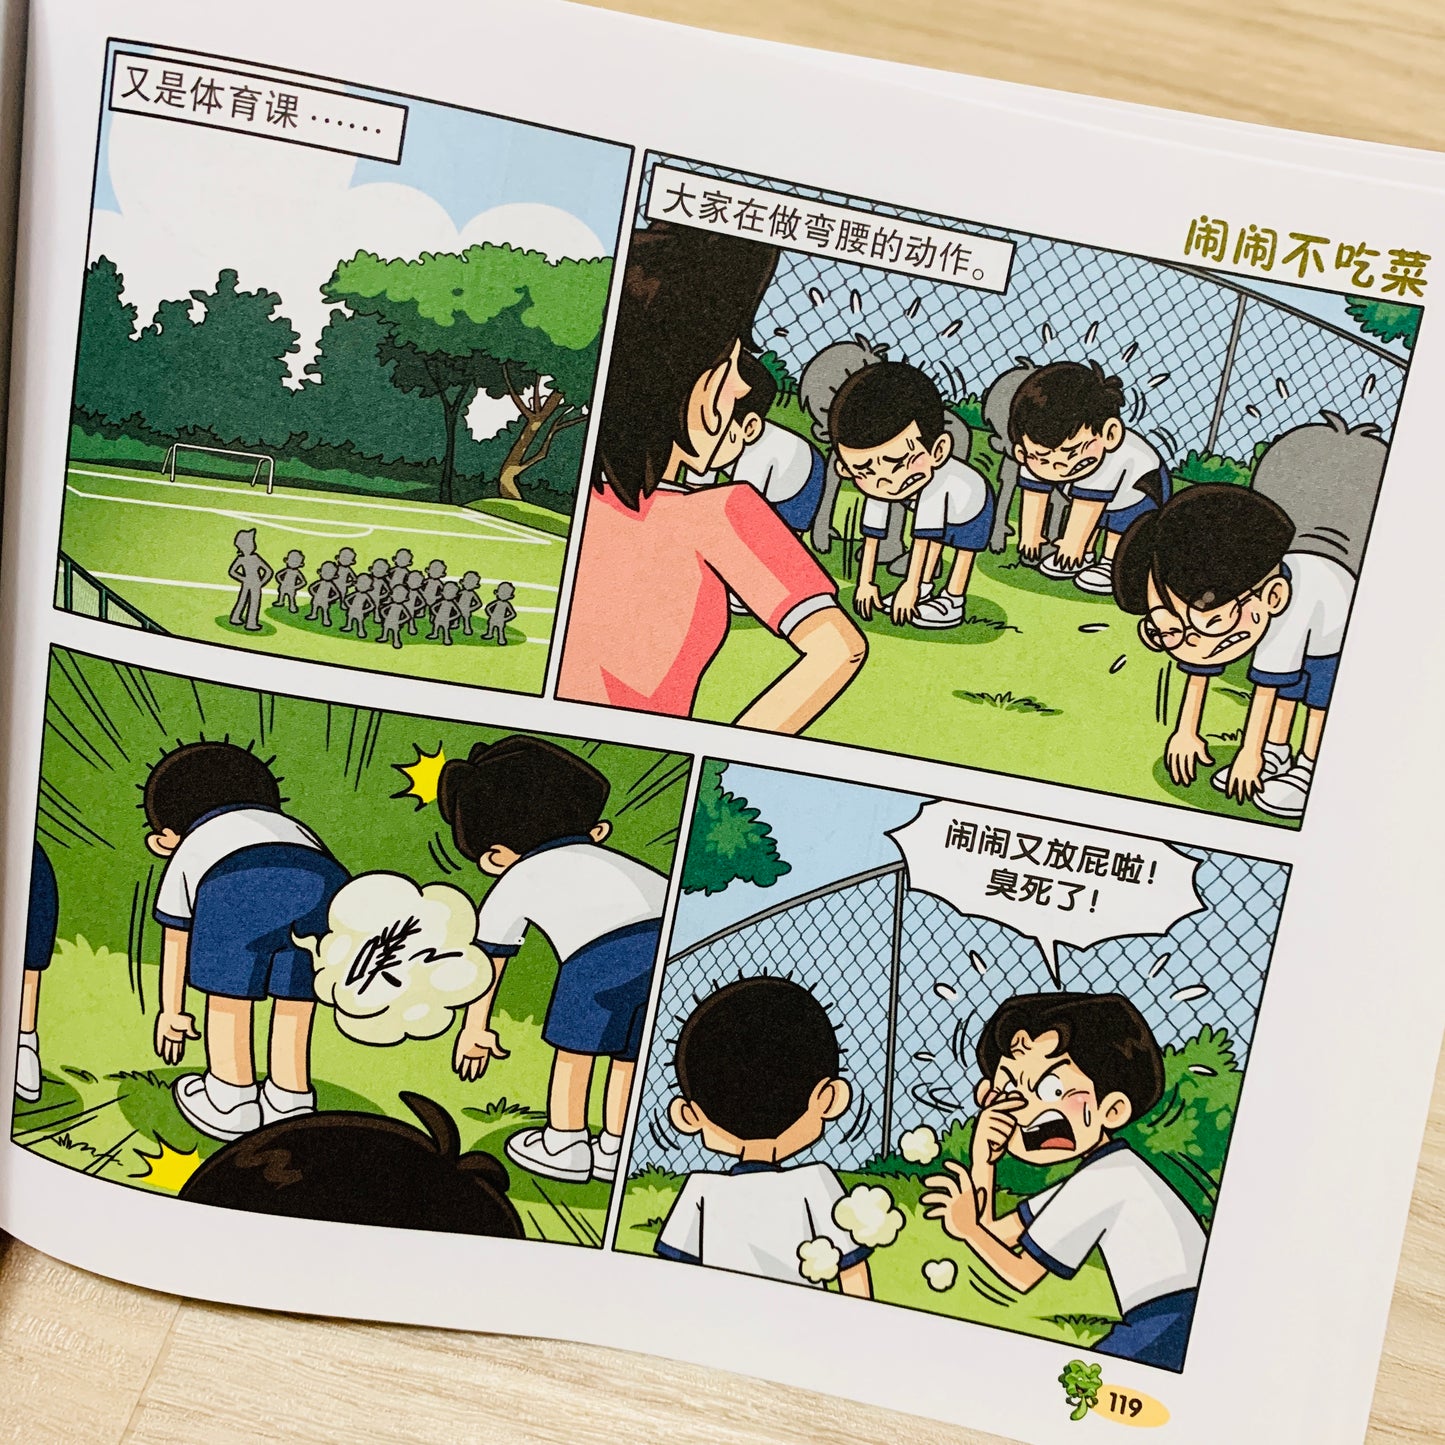 闹闹漫画系列 Nao Nao Comic Series